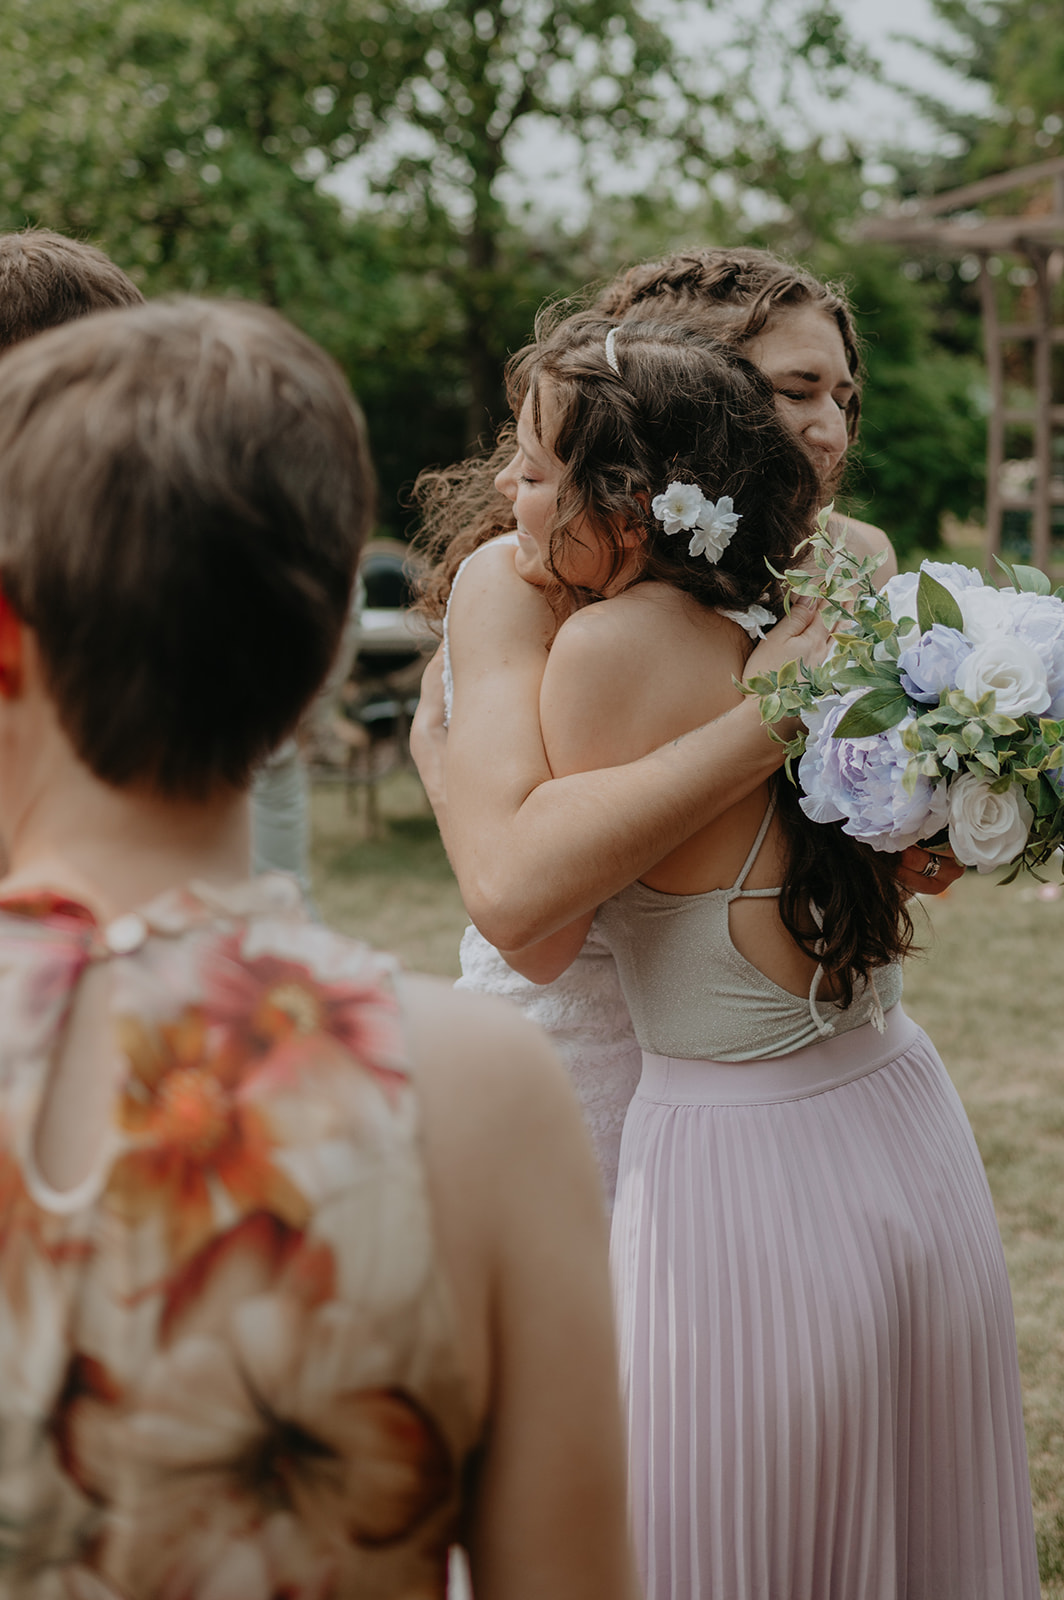 A couple says their vows in an intimate garden wedding in Edmonton, Alberta. 